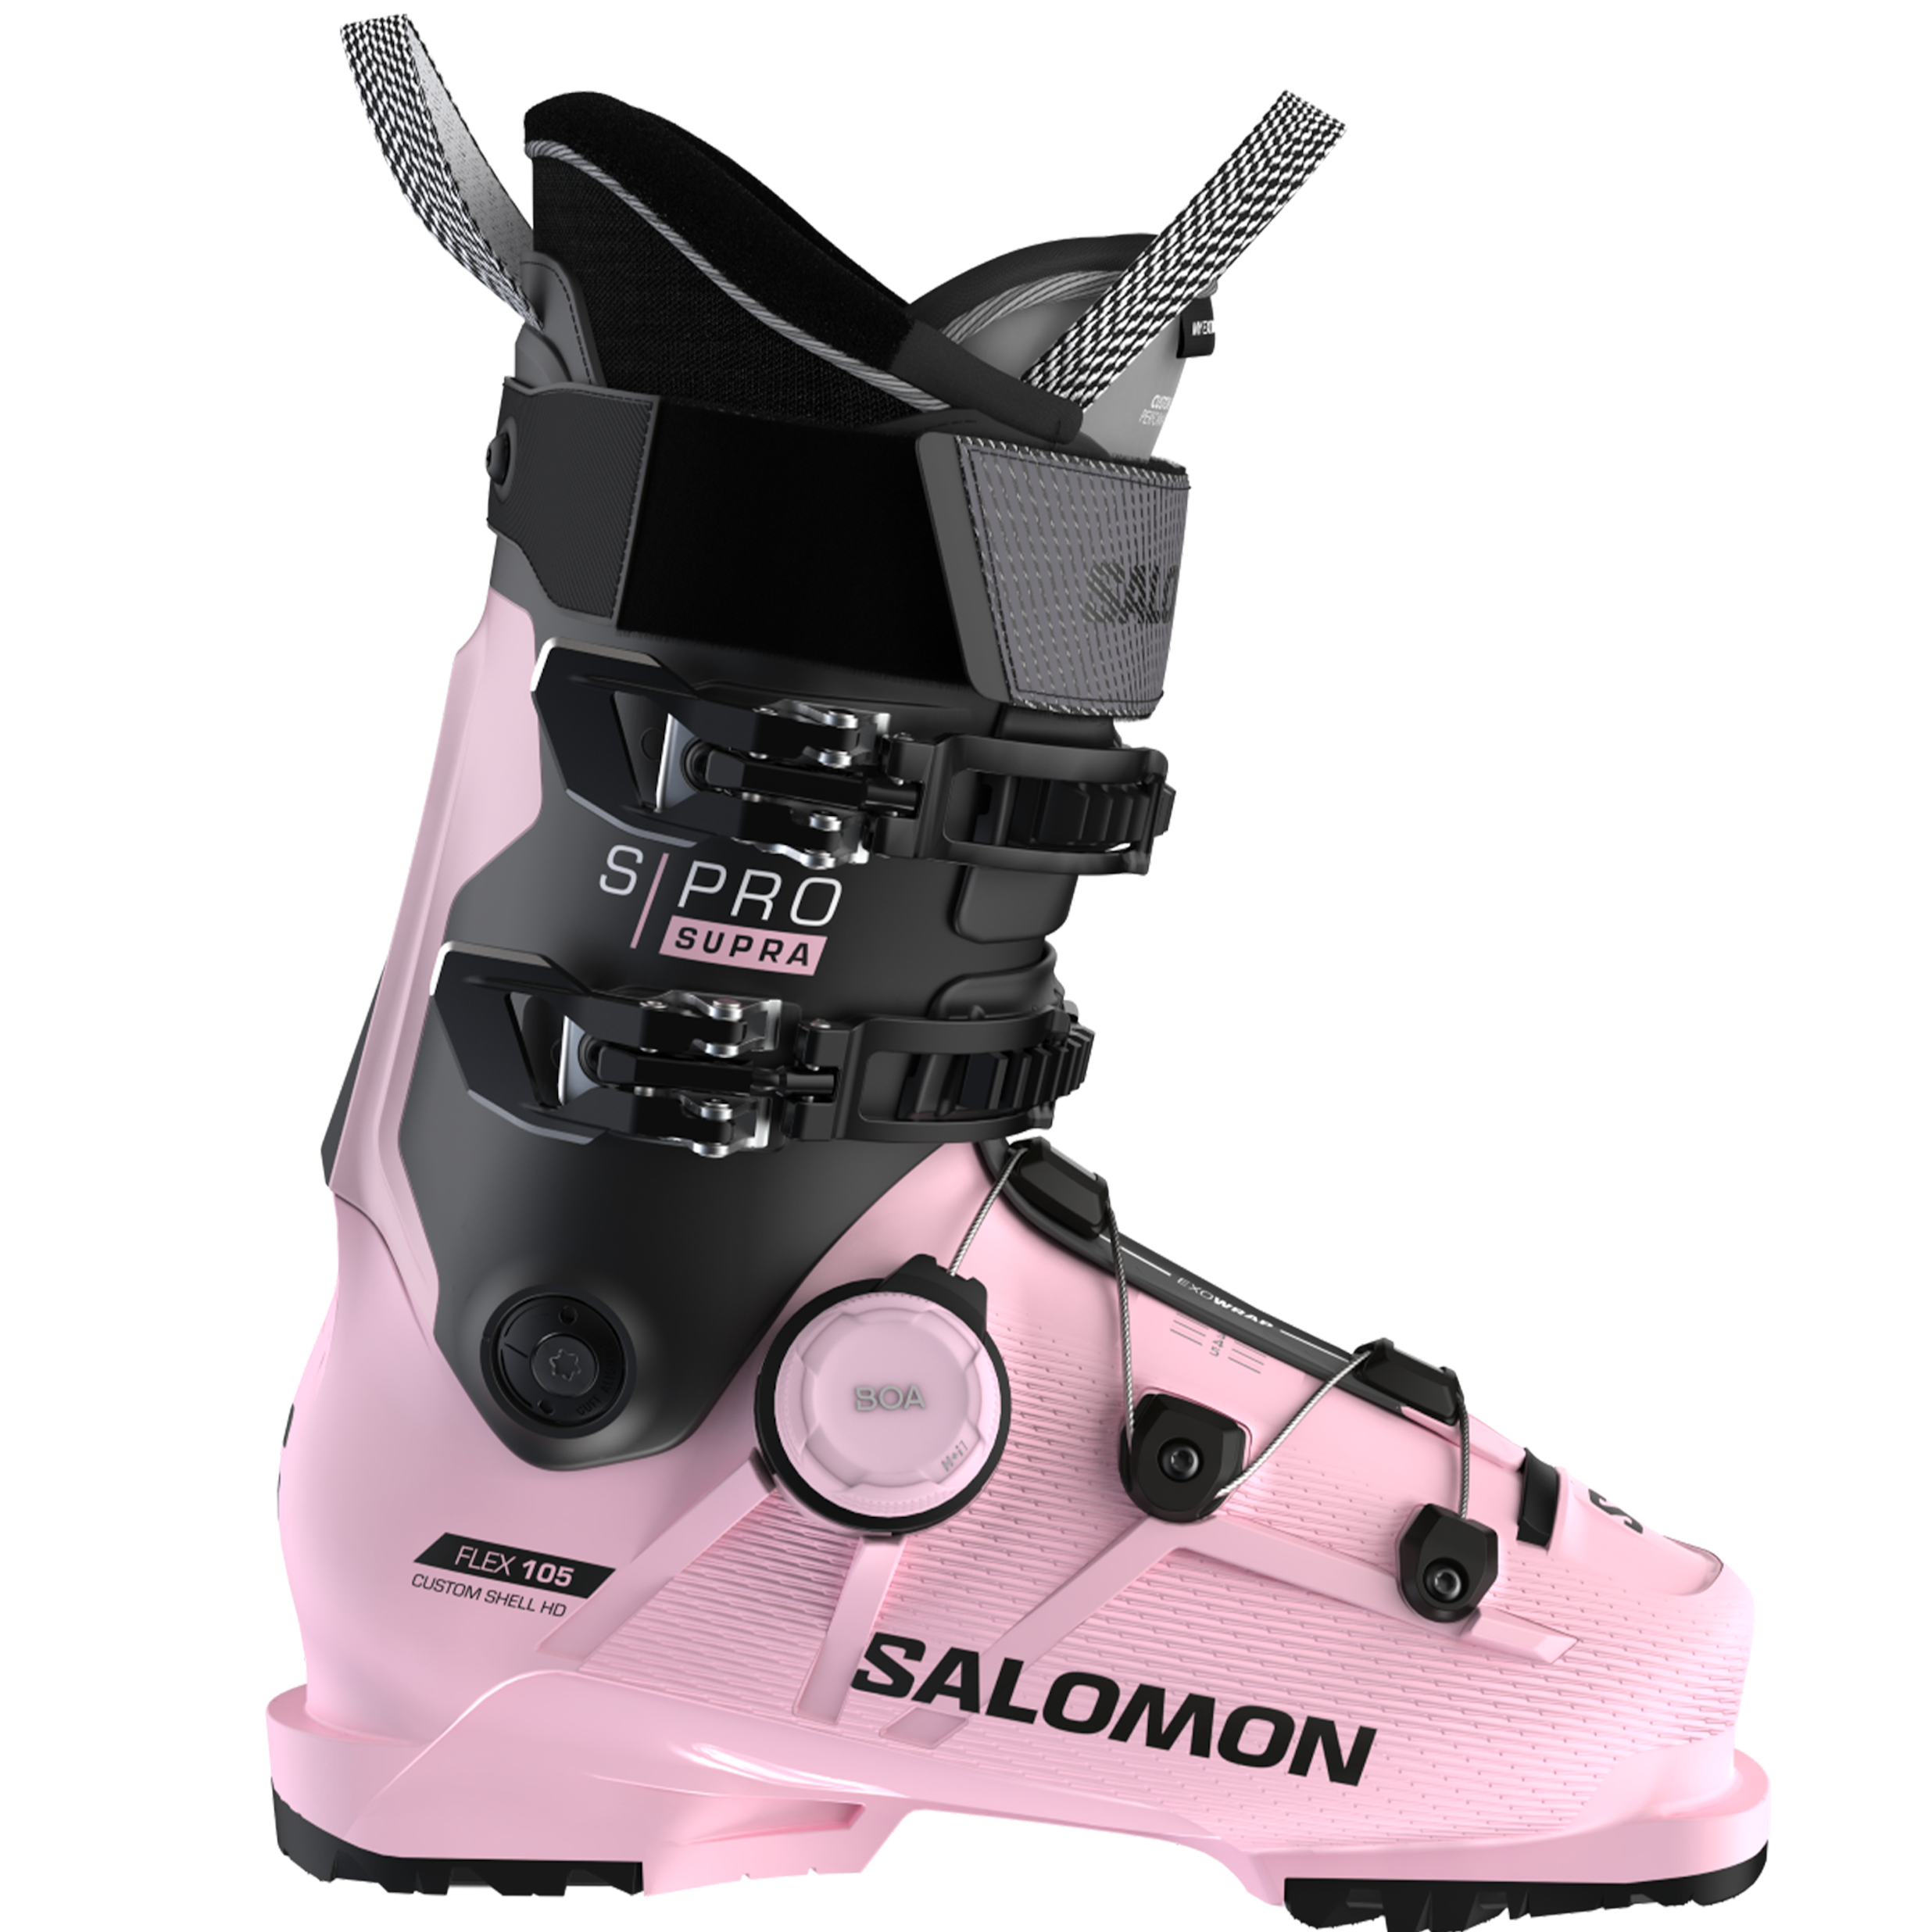 Women's Salomon S/PRO Supra BOA 105 Pink ski boot with black accents and BOA closure system on the bottom cuff.